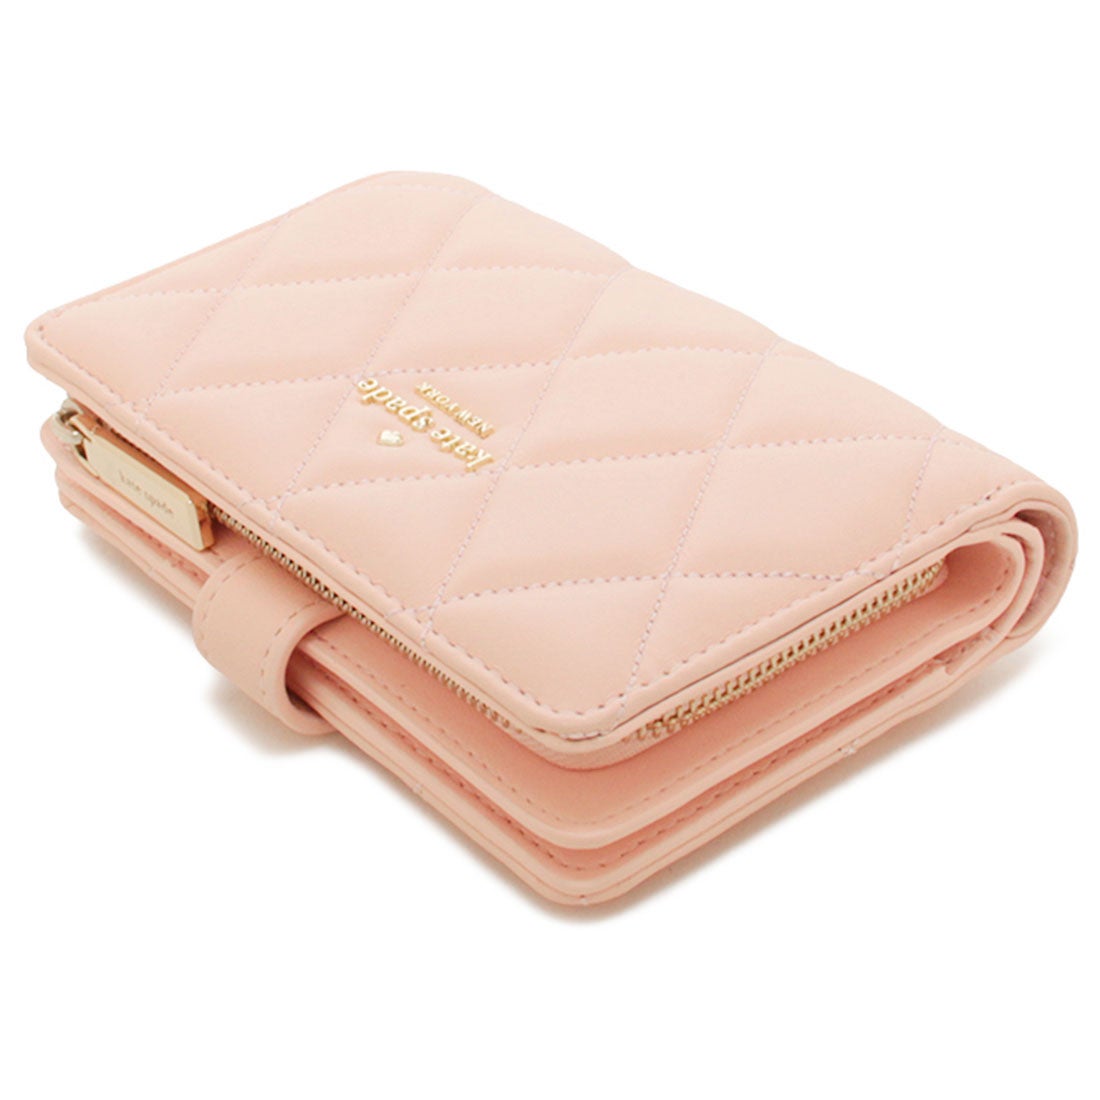 【ハワイ購入】ケイトスペード キルティング 二つ折り財布 カードケース ピンク